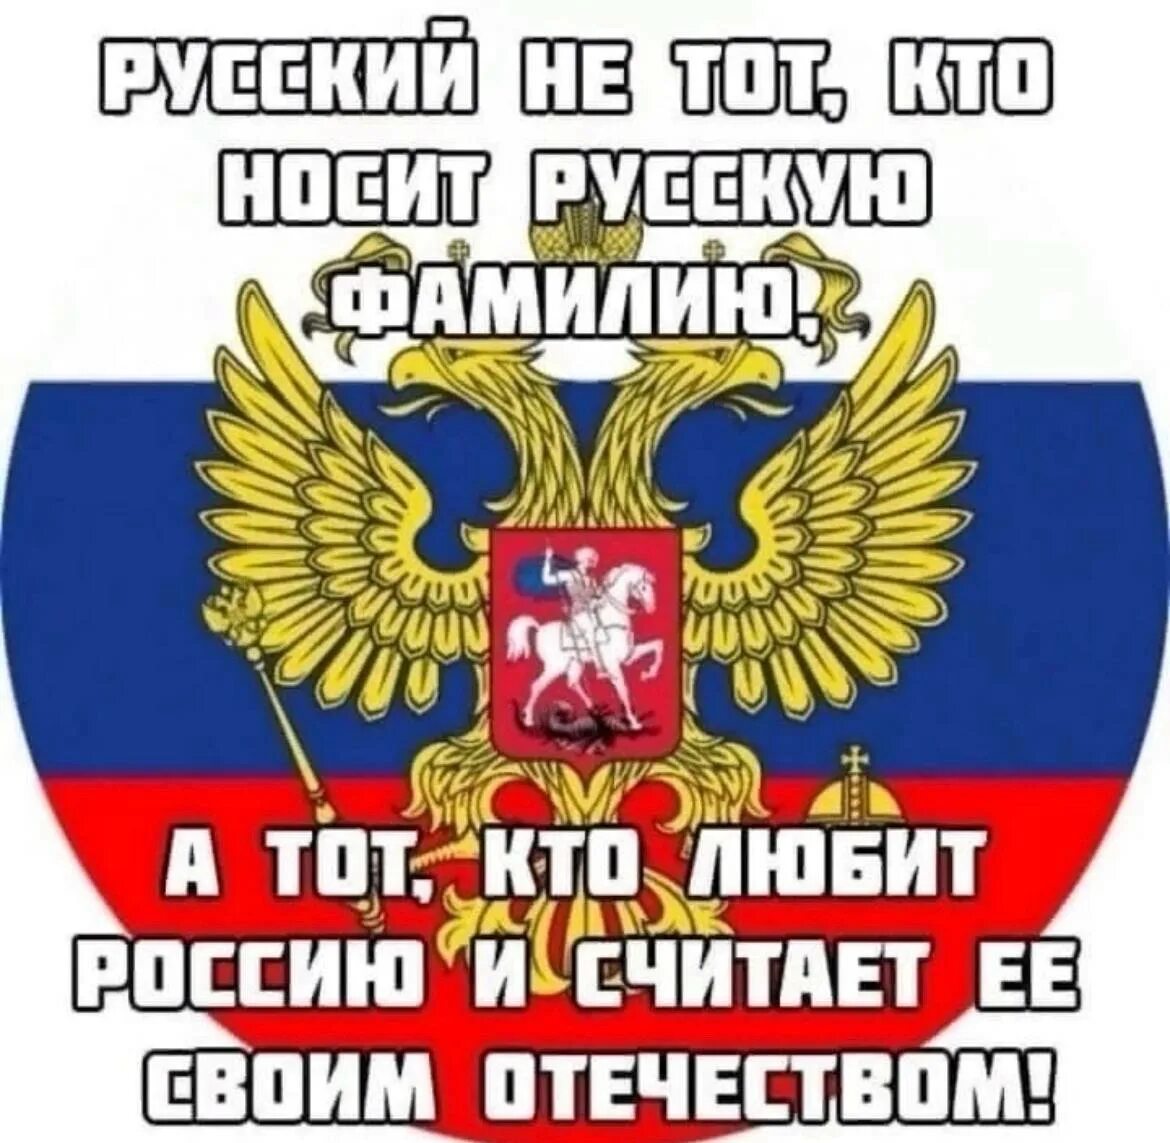 Я русский и был им всегда. Я за Россию. Мы русские картинки. Горжусь что я русский. Мы за Россию.